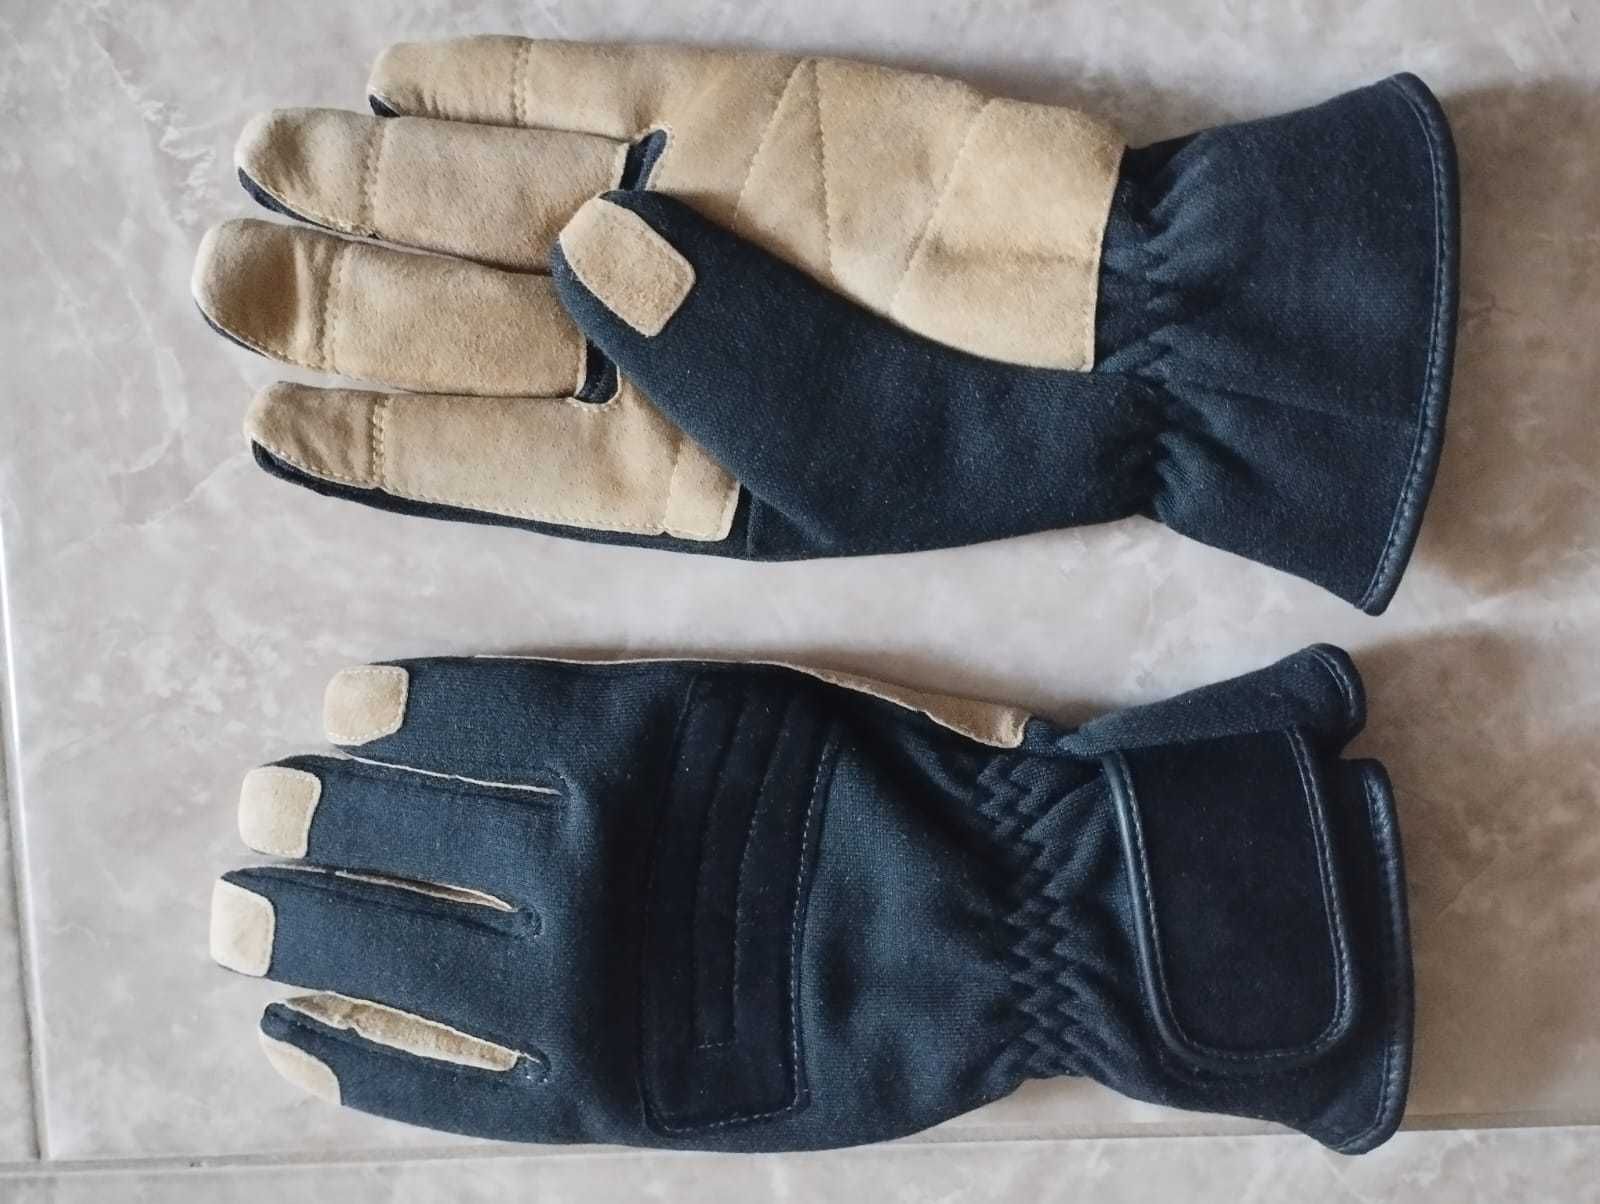 Рабочие перчатки новые.